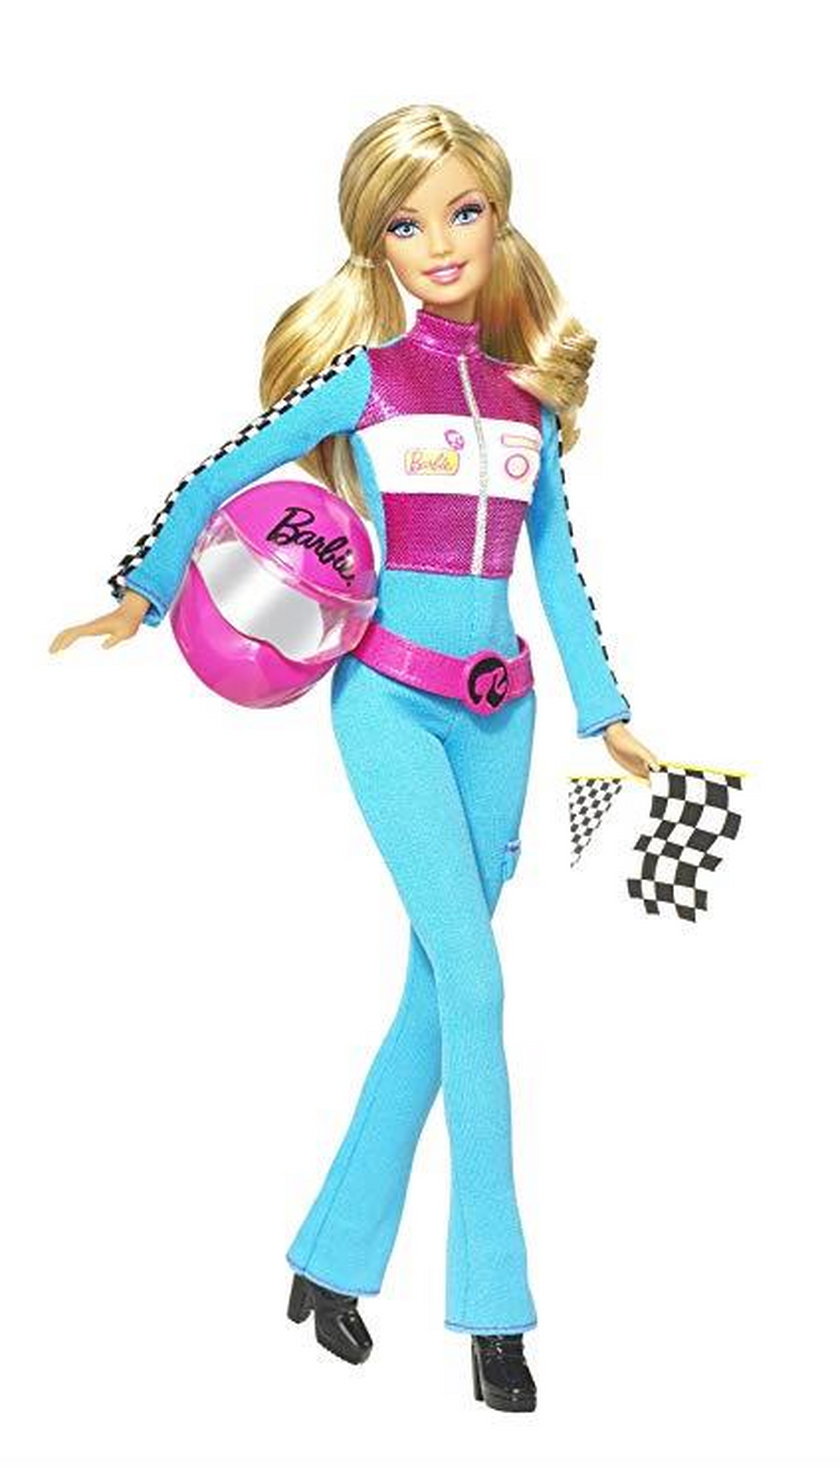 Barbie z 2010 r.